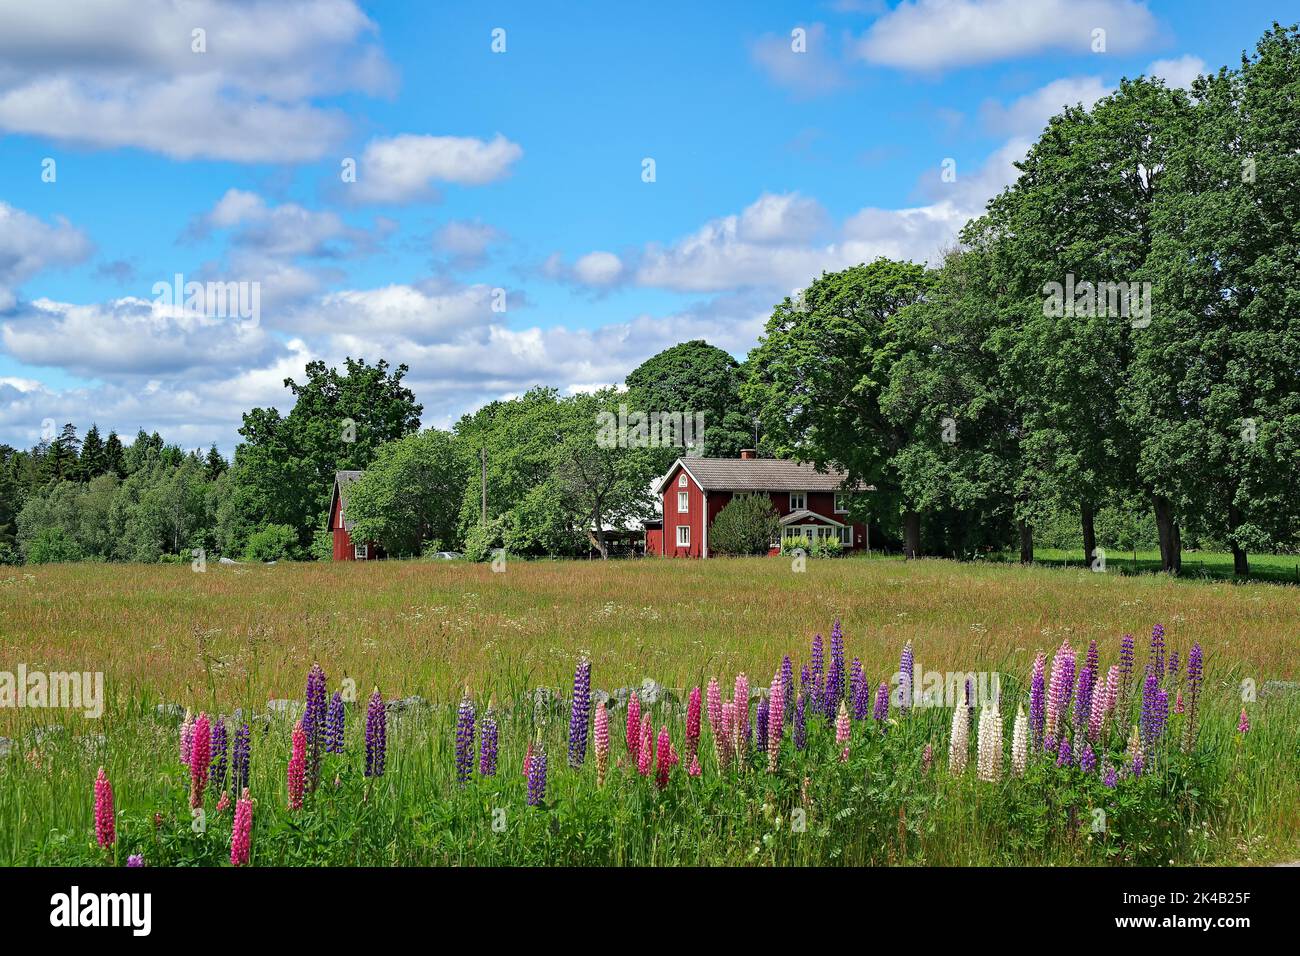 Paesaggio idilliaco con prati, papaveri e lupini, casa rossa svedese, viale di alberi. Regione di Kalmar, Svezia Foto Stock